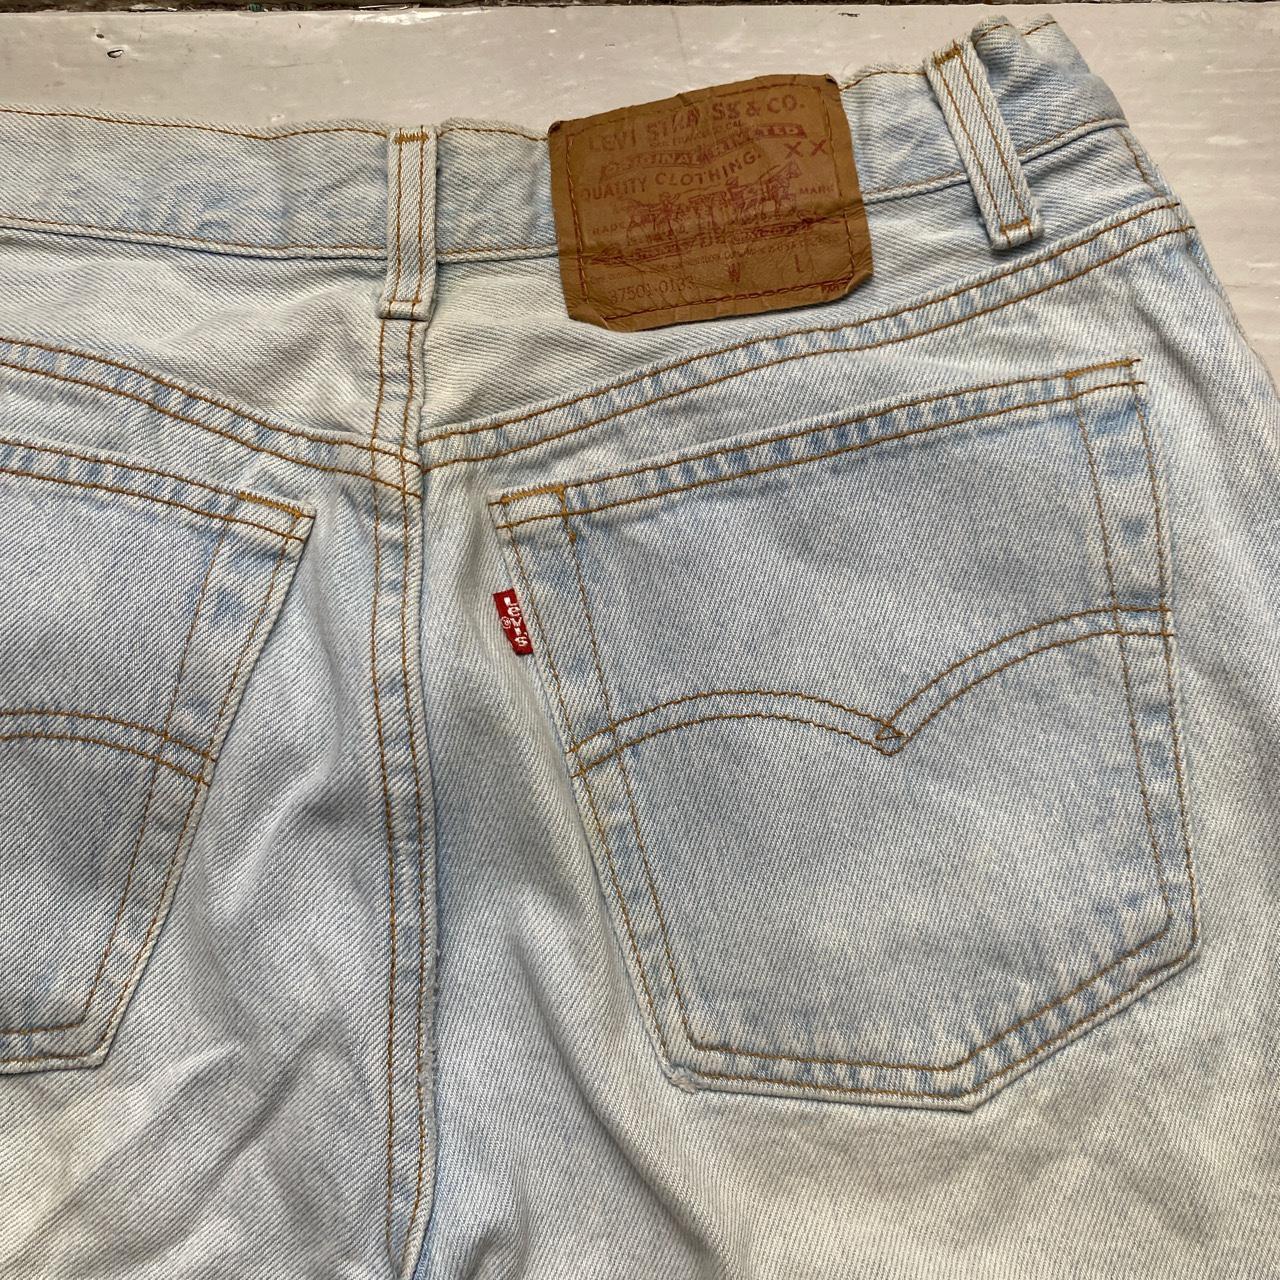 Levis 37501-0133 Vintage Made in USA Light Blue Jean Short Jorts